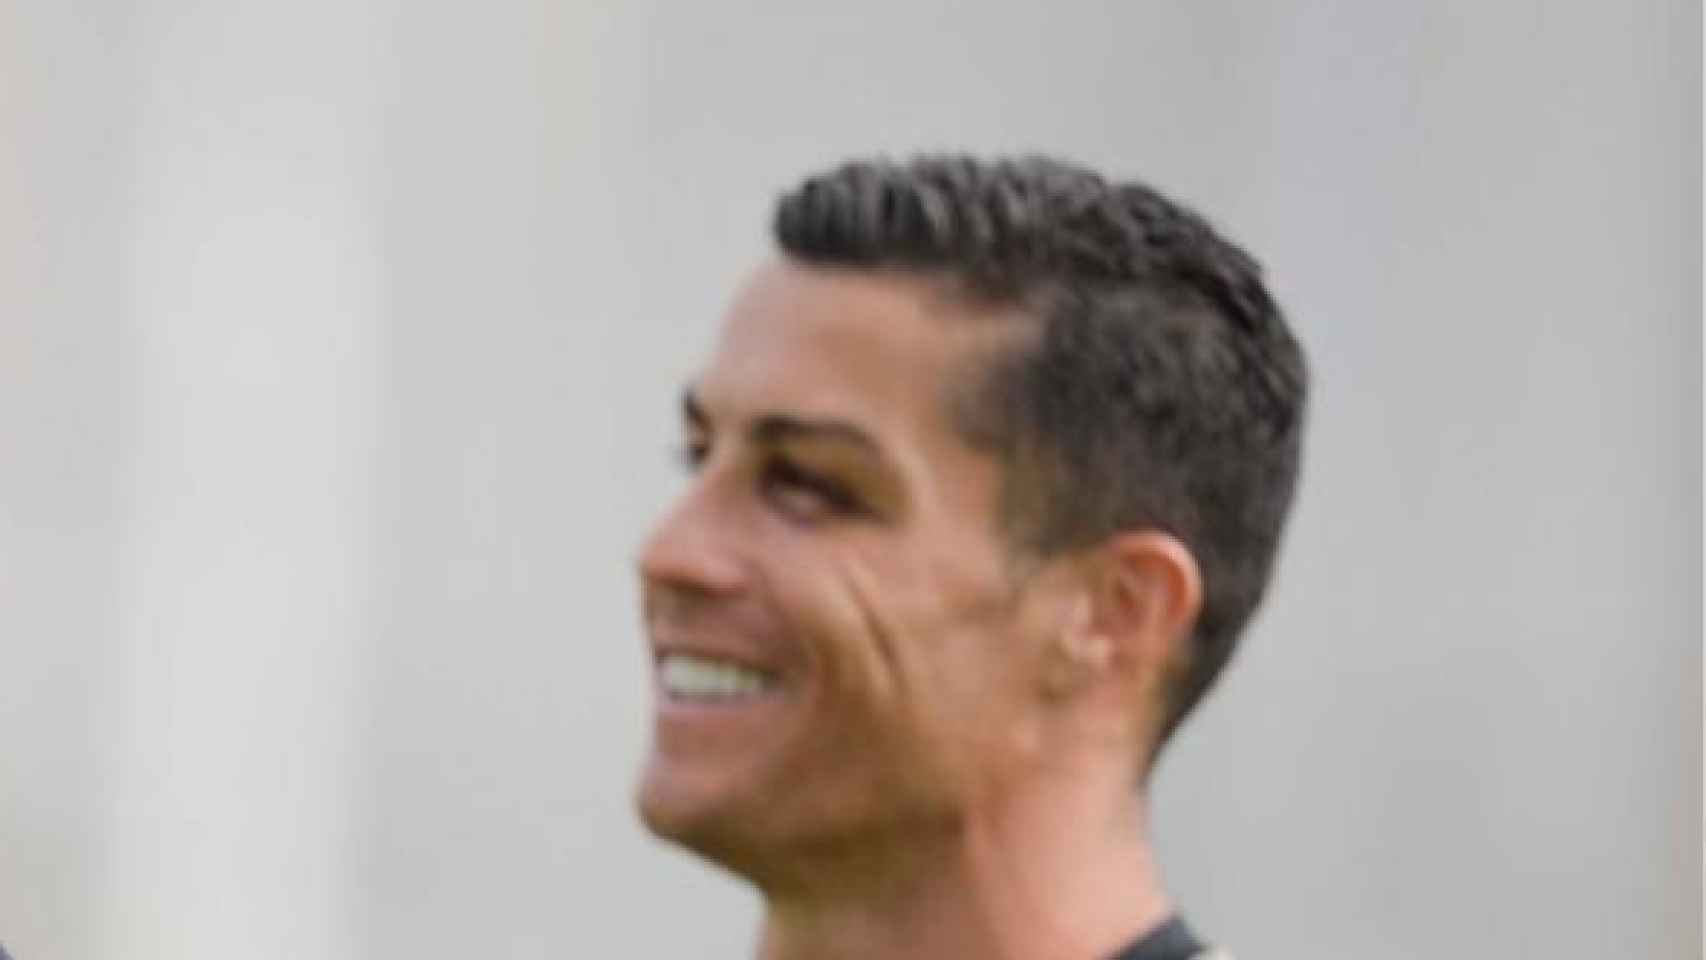 Cristiano Ronaldo regresa a los entrenamientos con un ojo morado. Foto: juventus.com